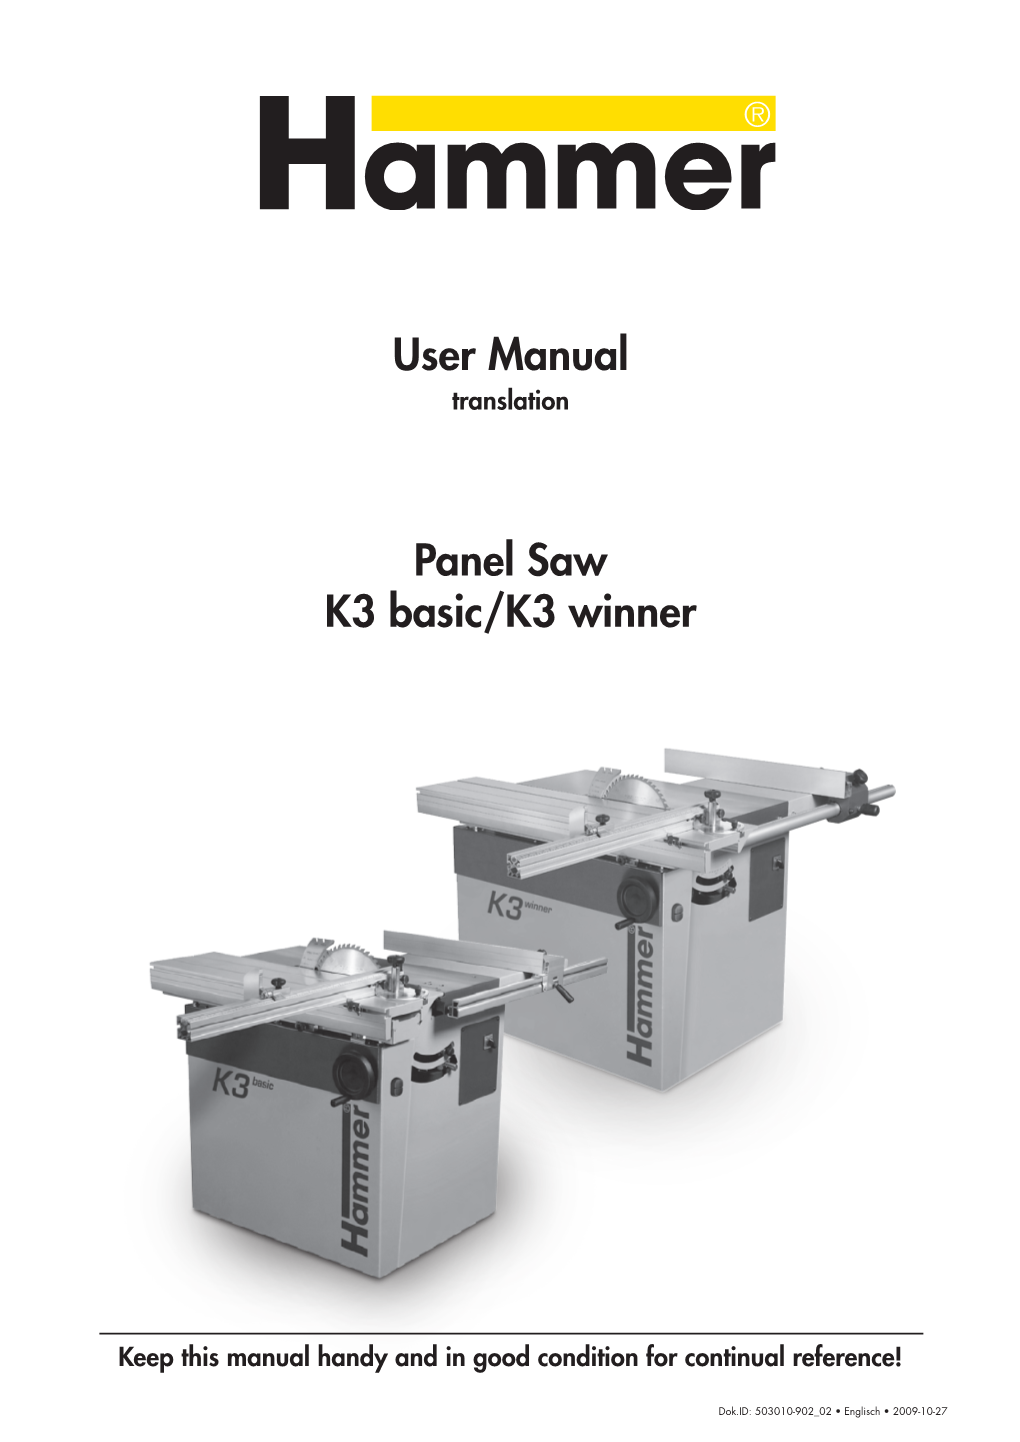 User Manual Panel Saw K3 Basic/K3 Winner